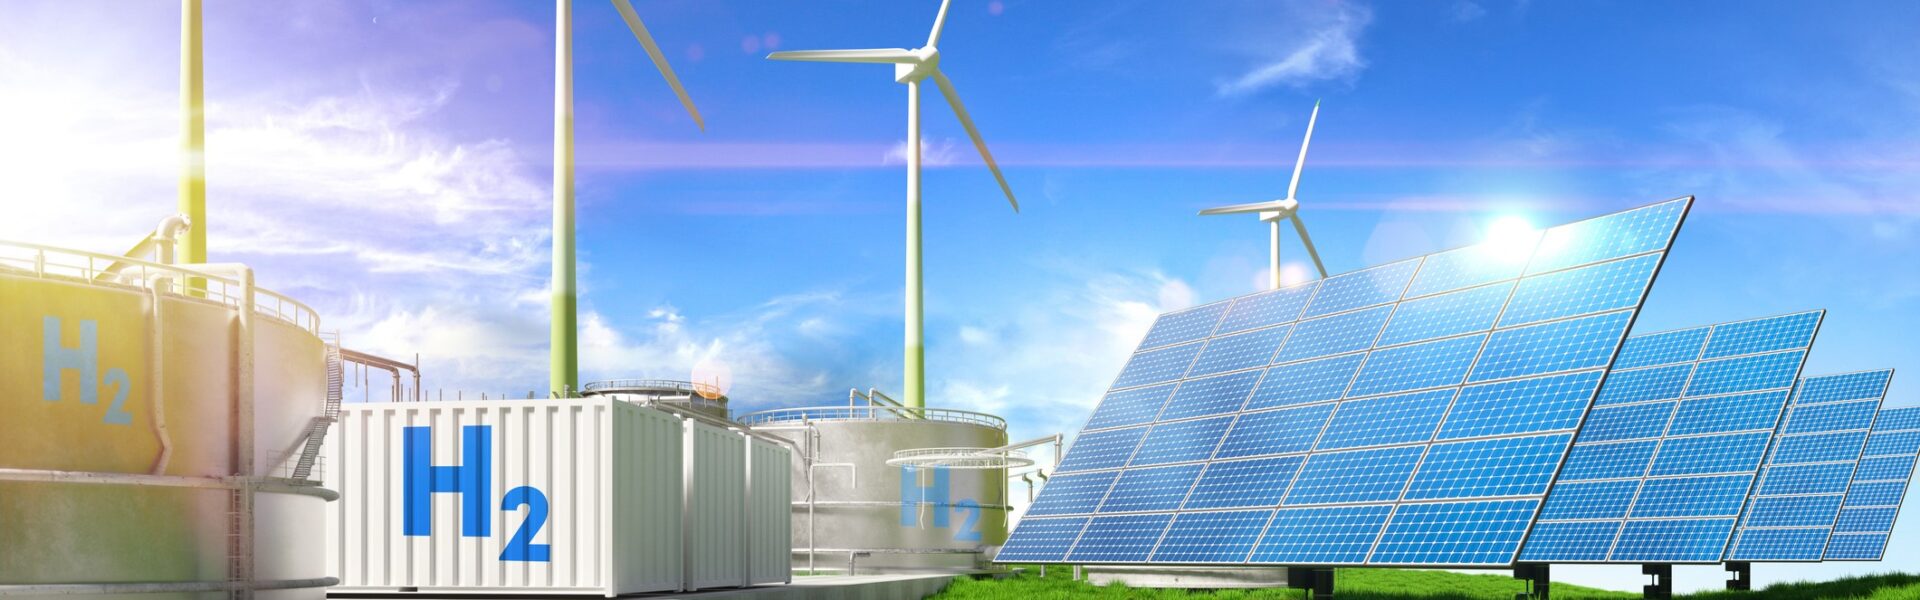 Digitalisierung als Wegbereiter für die Energiewende mit grünem Wasserstoff